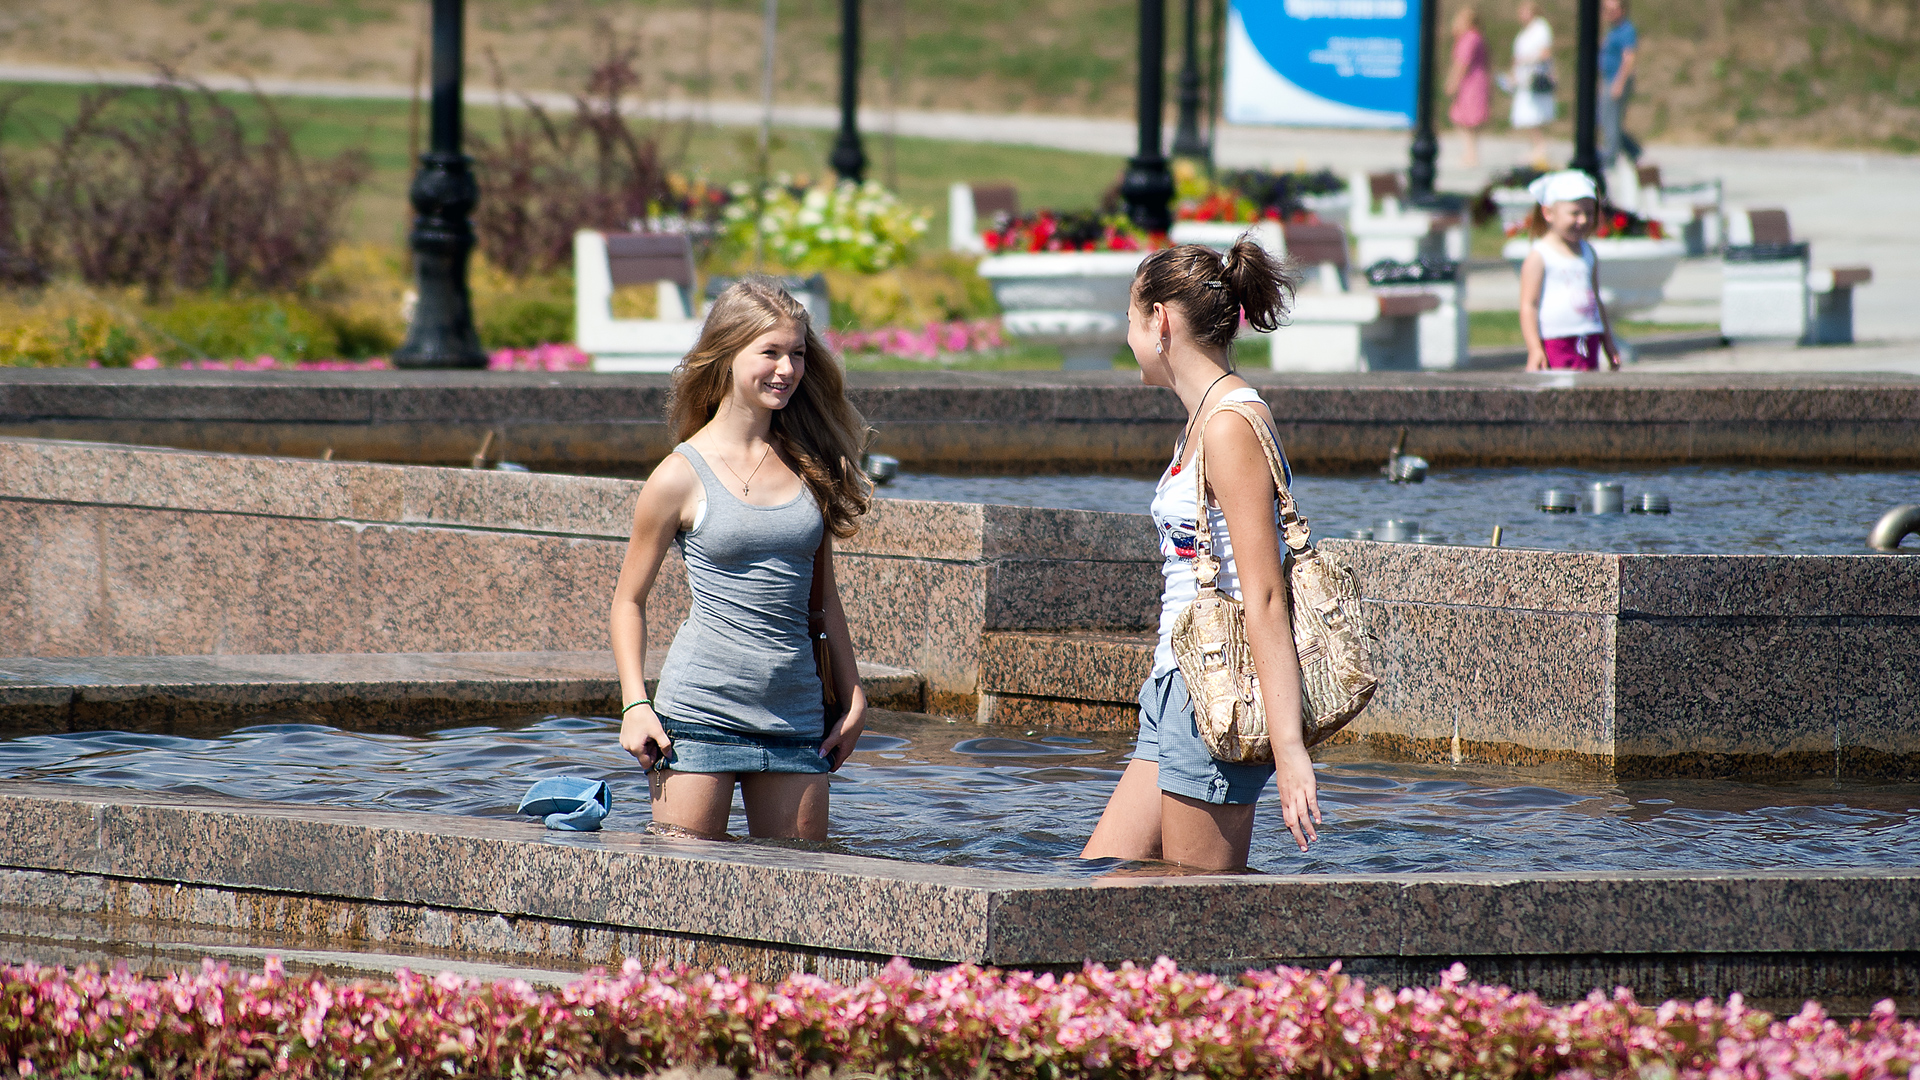 Фото без стыда. Фонтан "с девушкой". Красивые девушки у фонтана. Девушки в жару. Девушки купаются в фонтане.